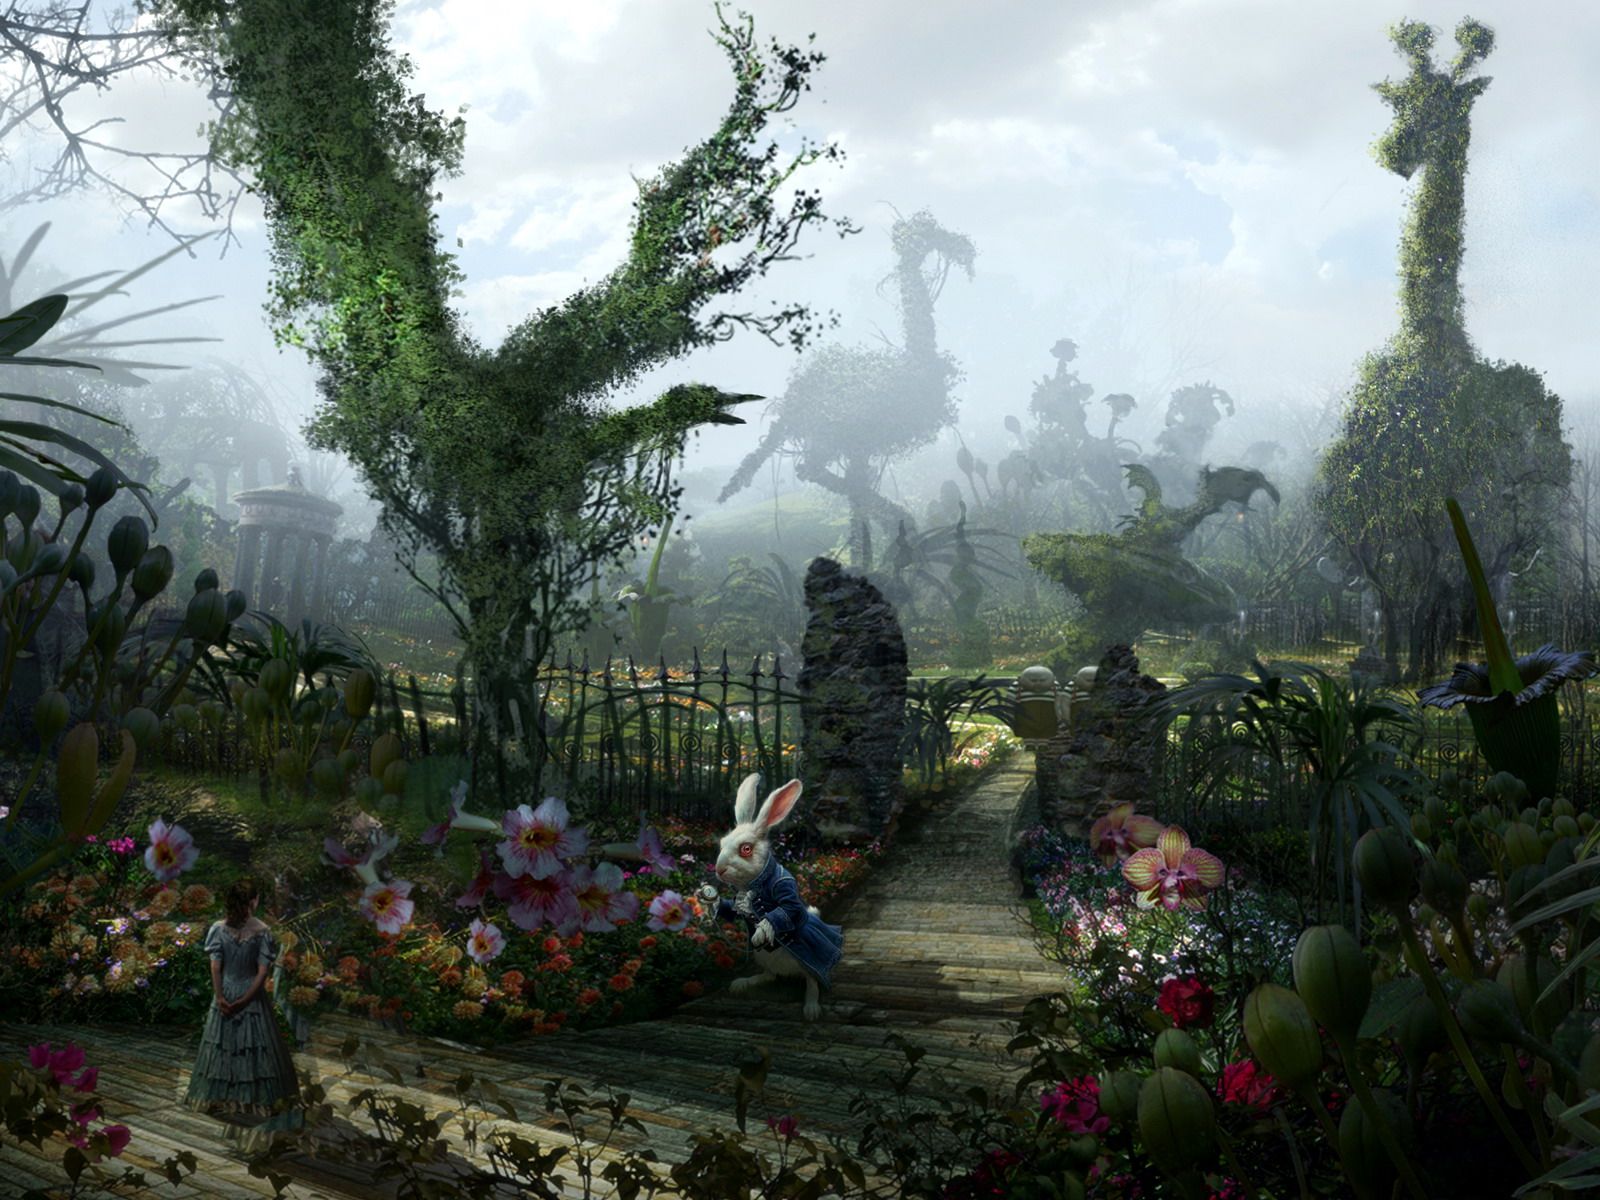  Alice Im Wunderland Hintergrundbild 1600x1200. Bilder von Alice im Wunderland (2010) Film